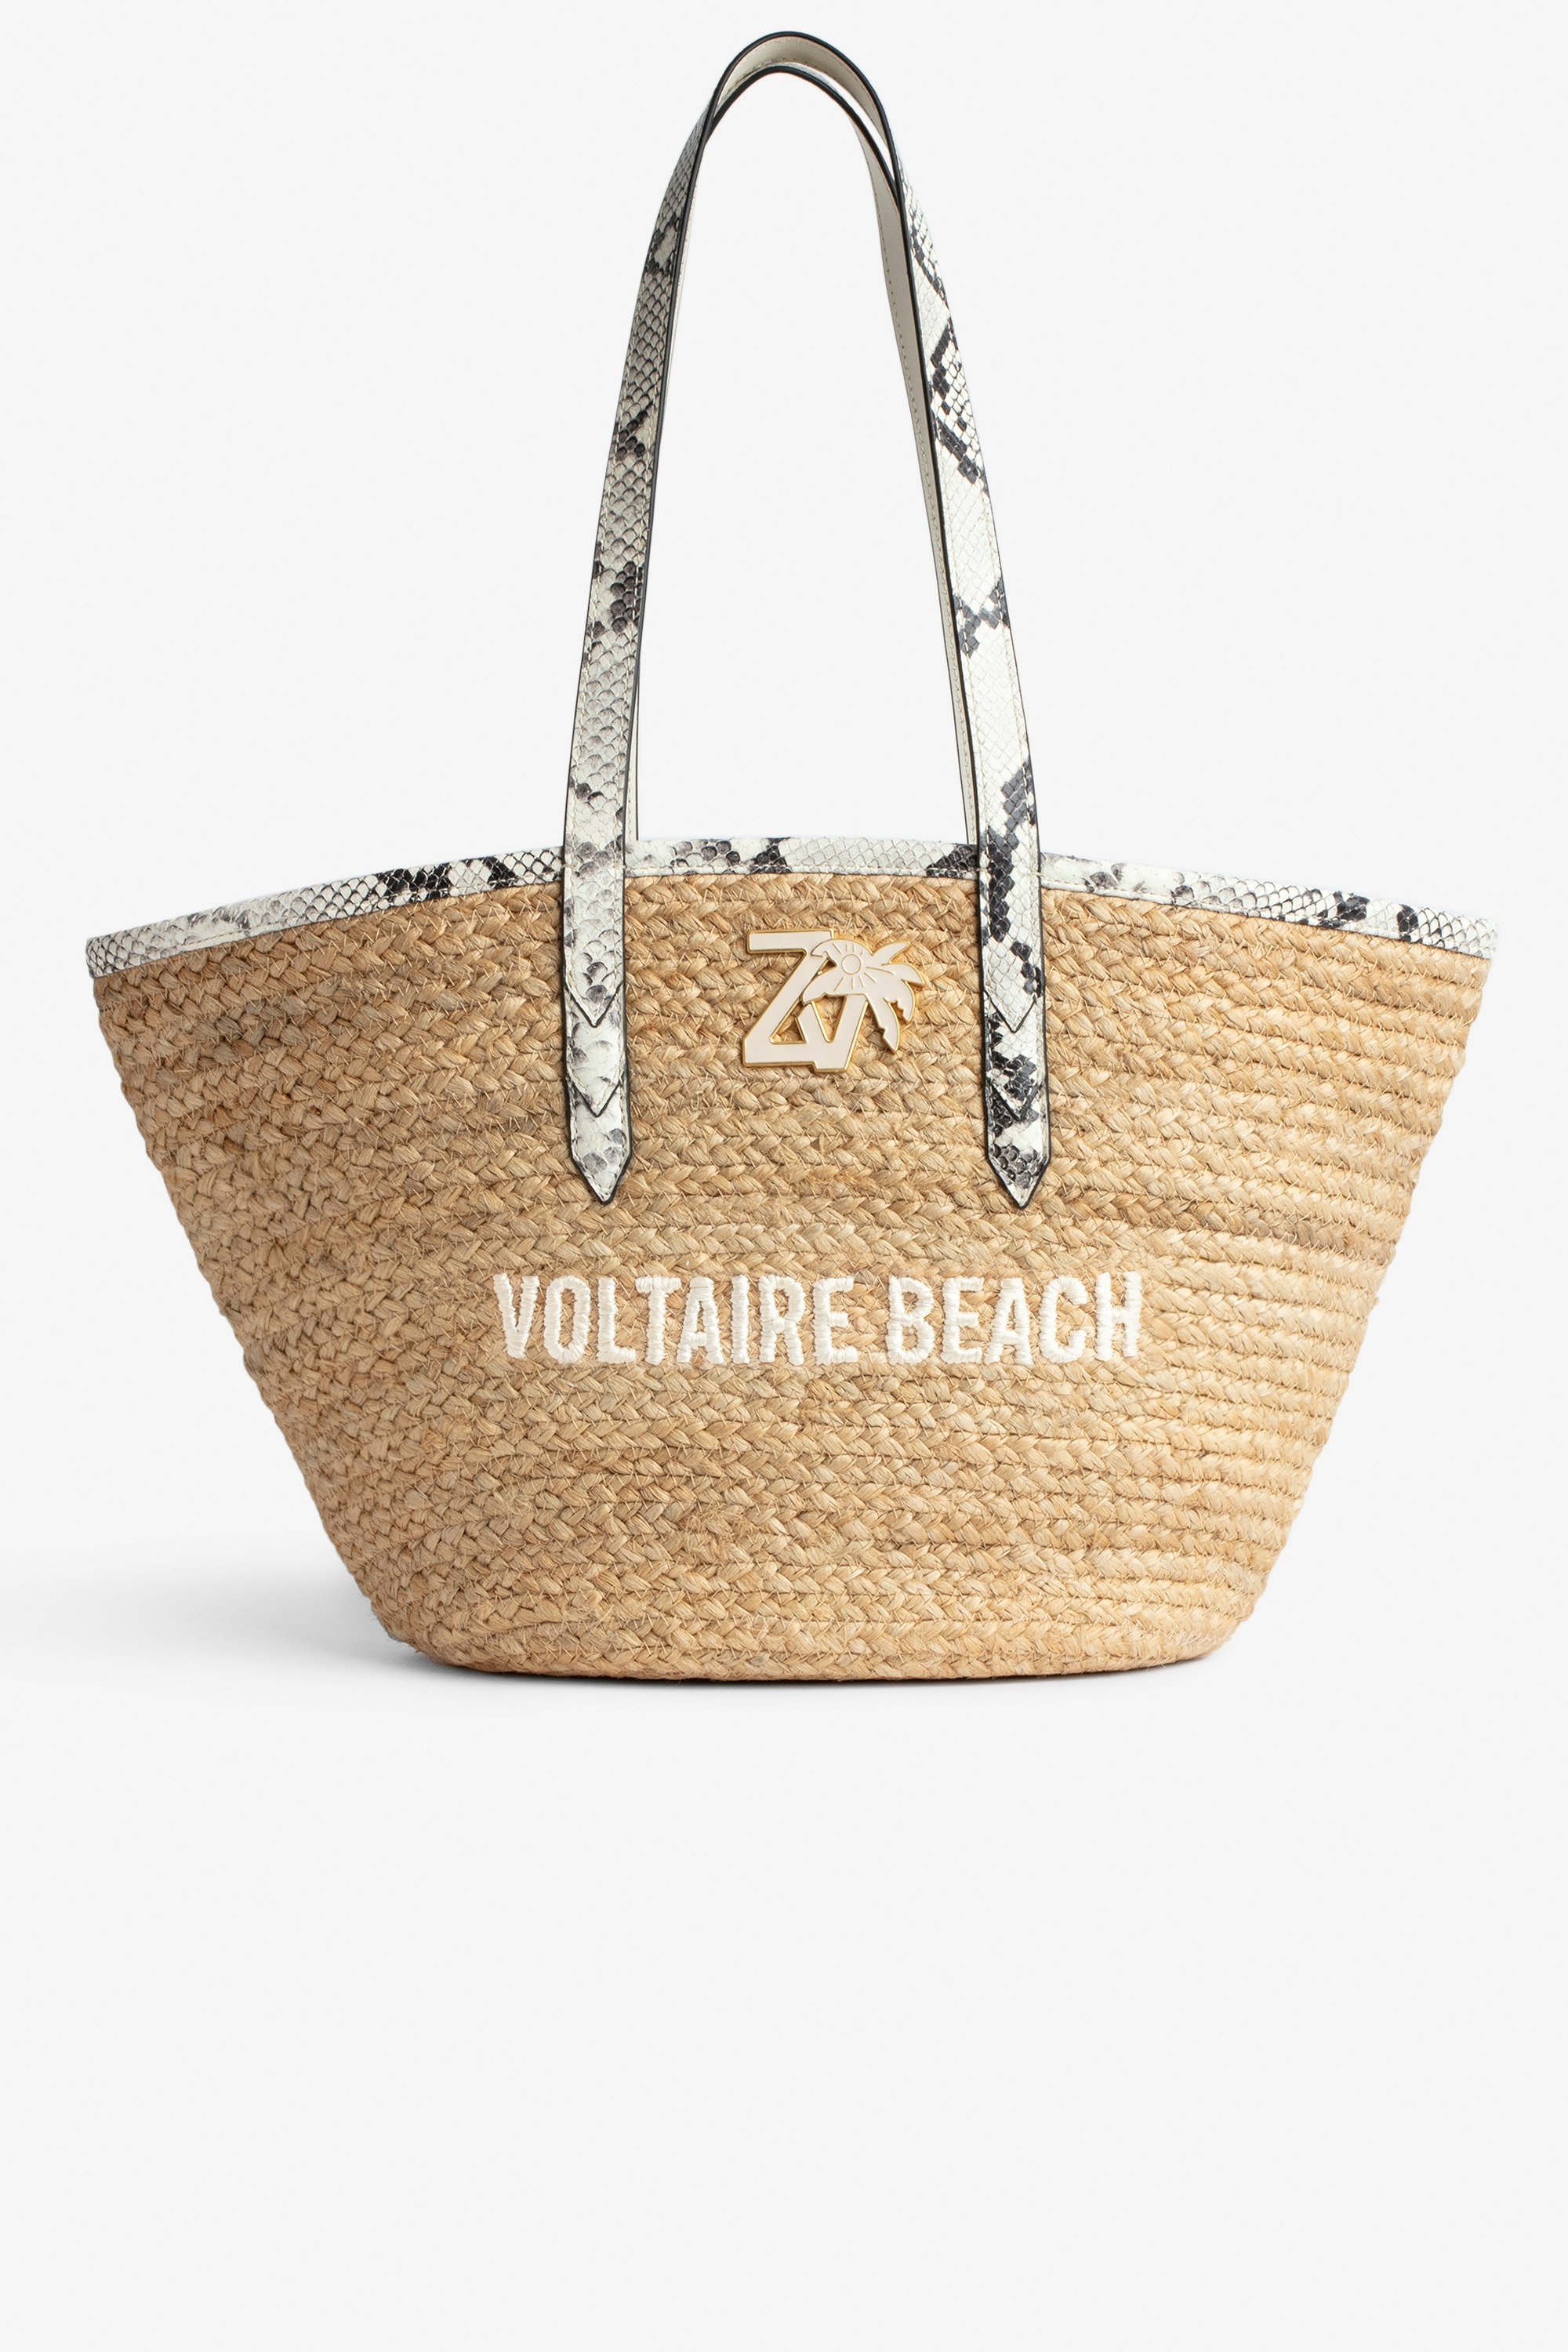 Borsa Le Beach Bag Borsa in paglia con manici in pelle ecru effetto pitone, con ricamo "Voltaire Beach" e impreziosita da un charm ZV - Donna